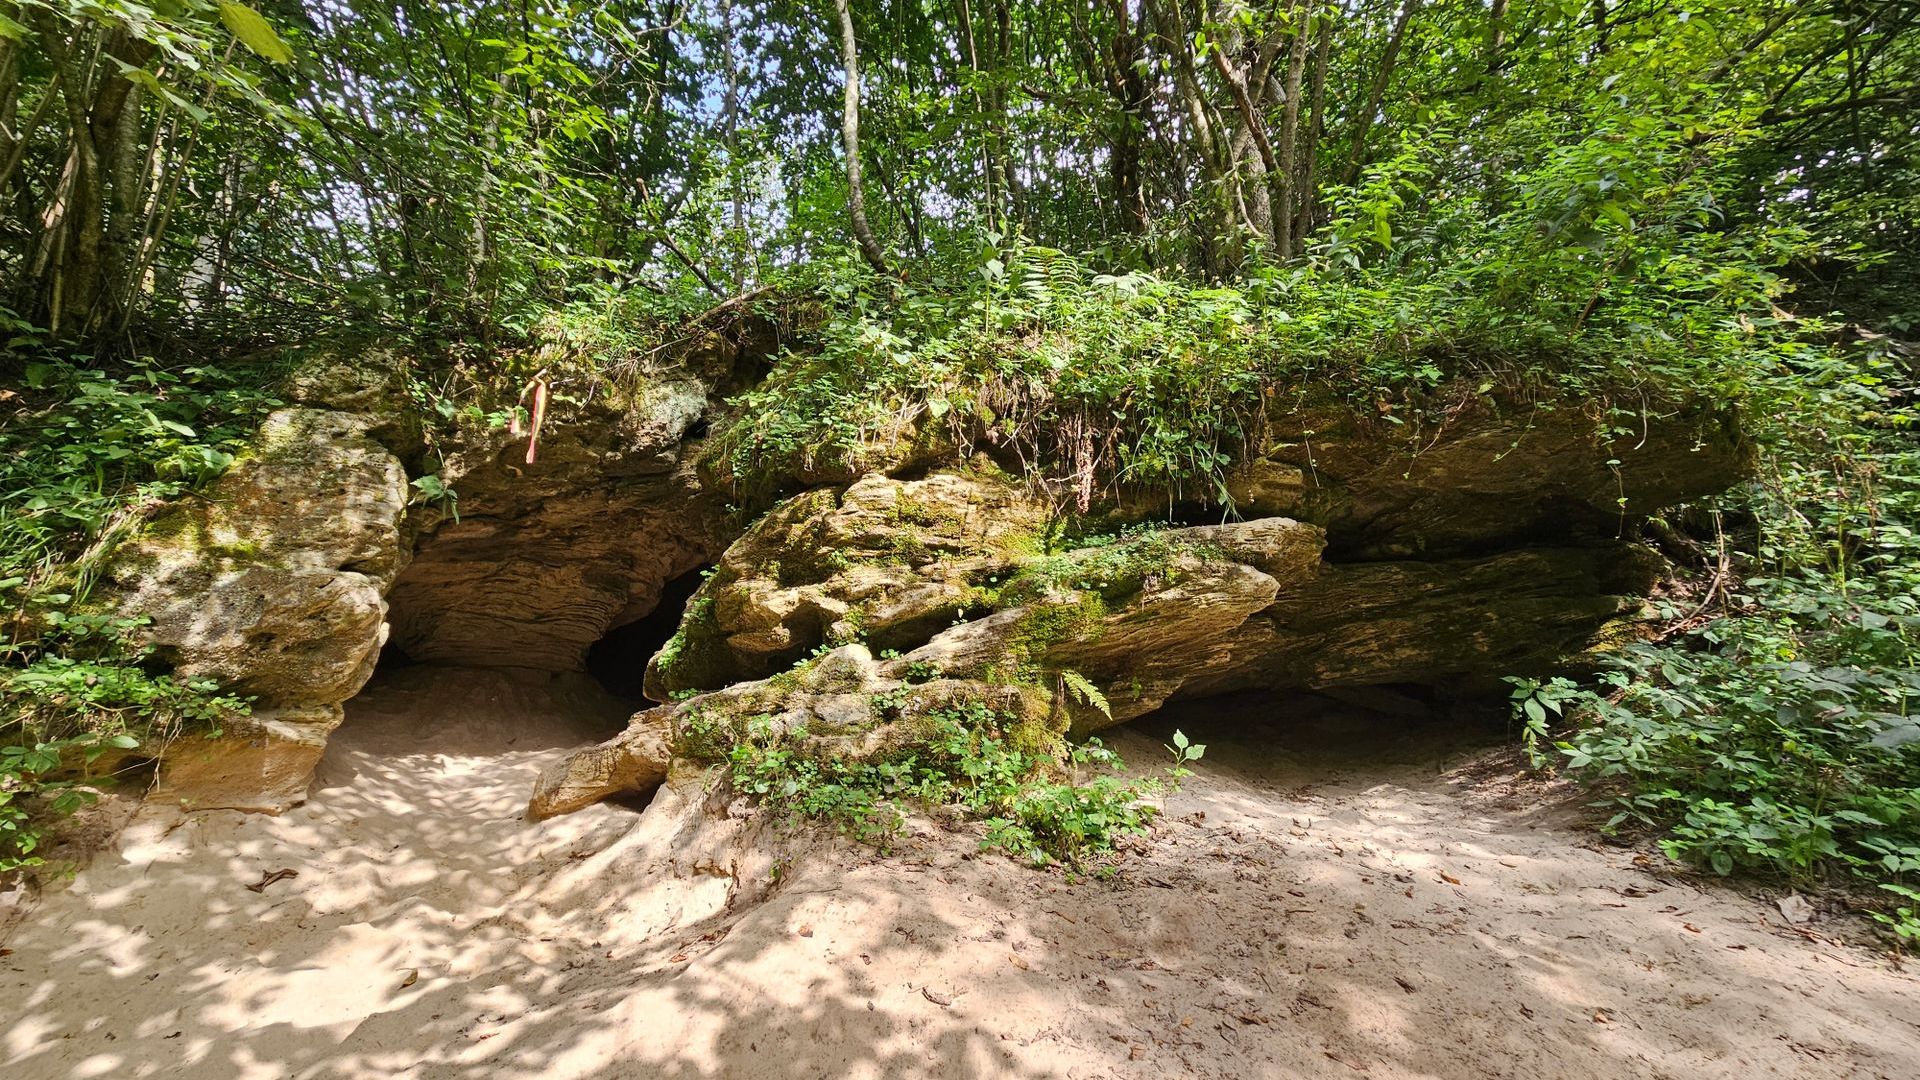 Čiobiškis Cave